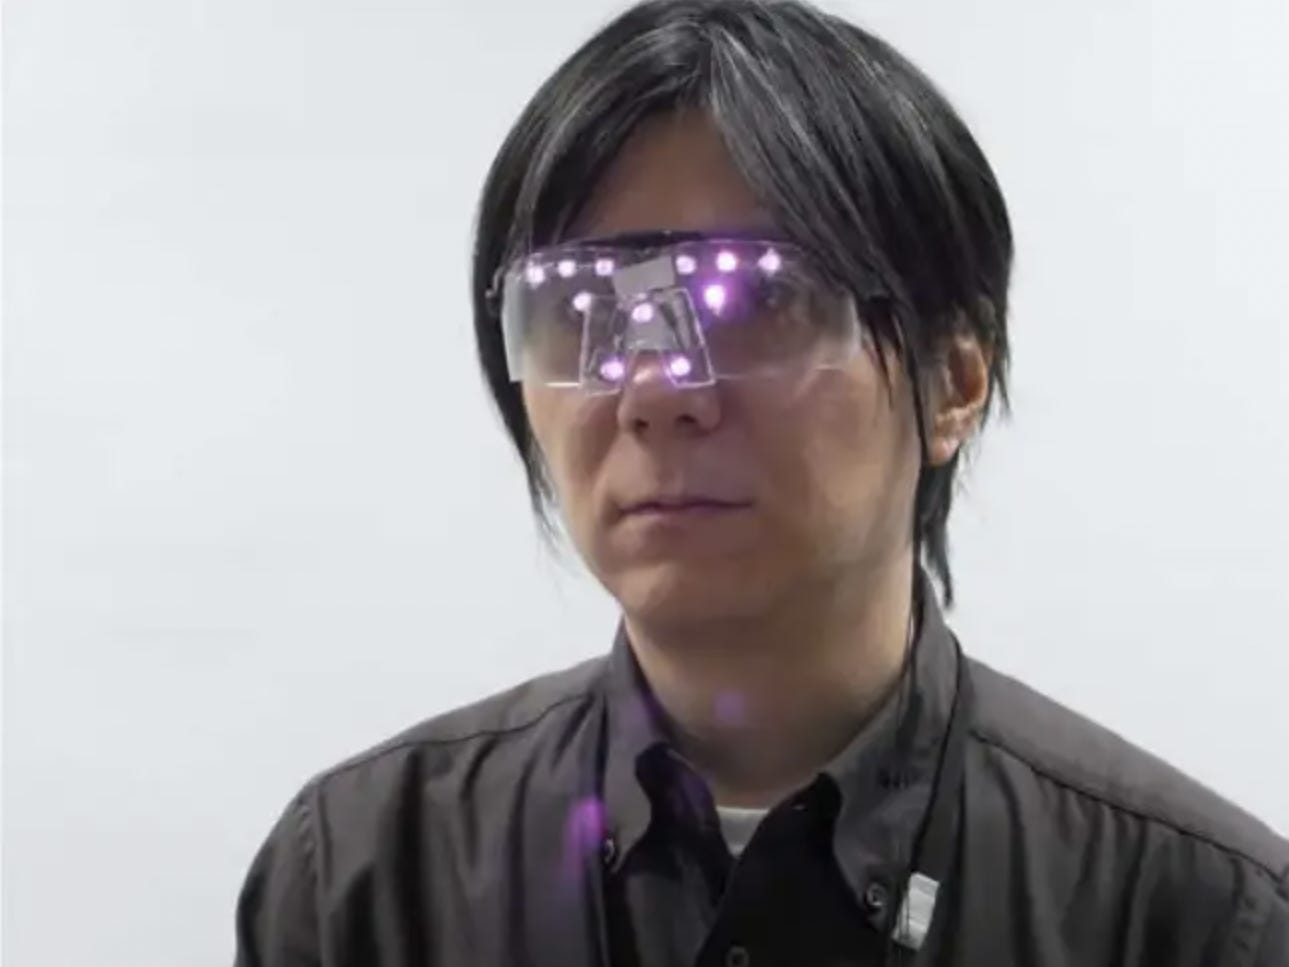 Ein Mann trägt eine Brille mit violetten LED-Leuchten